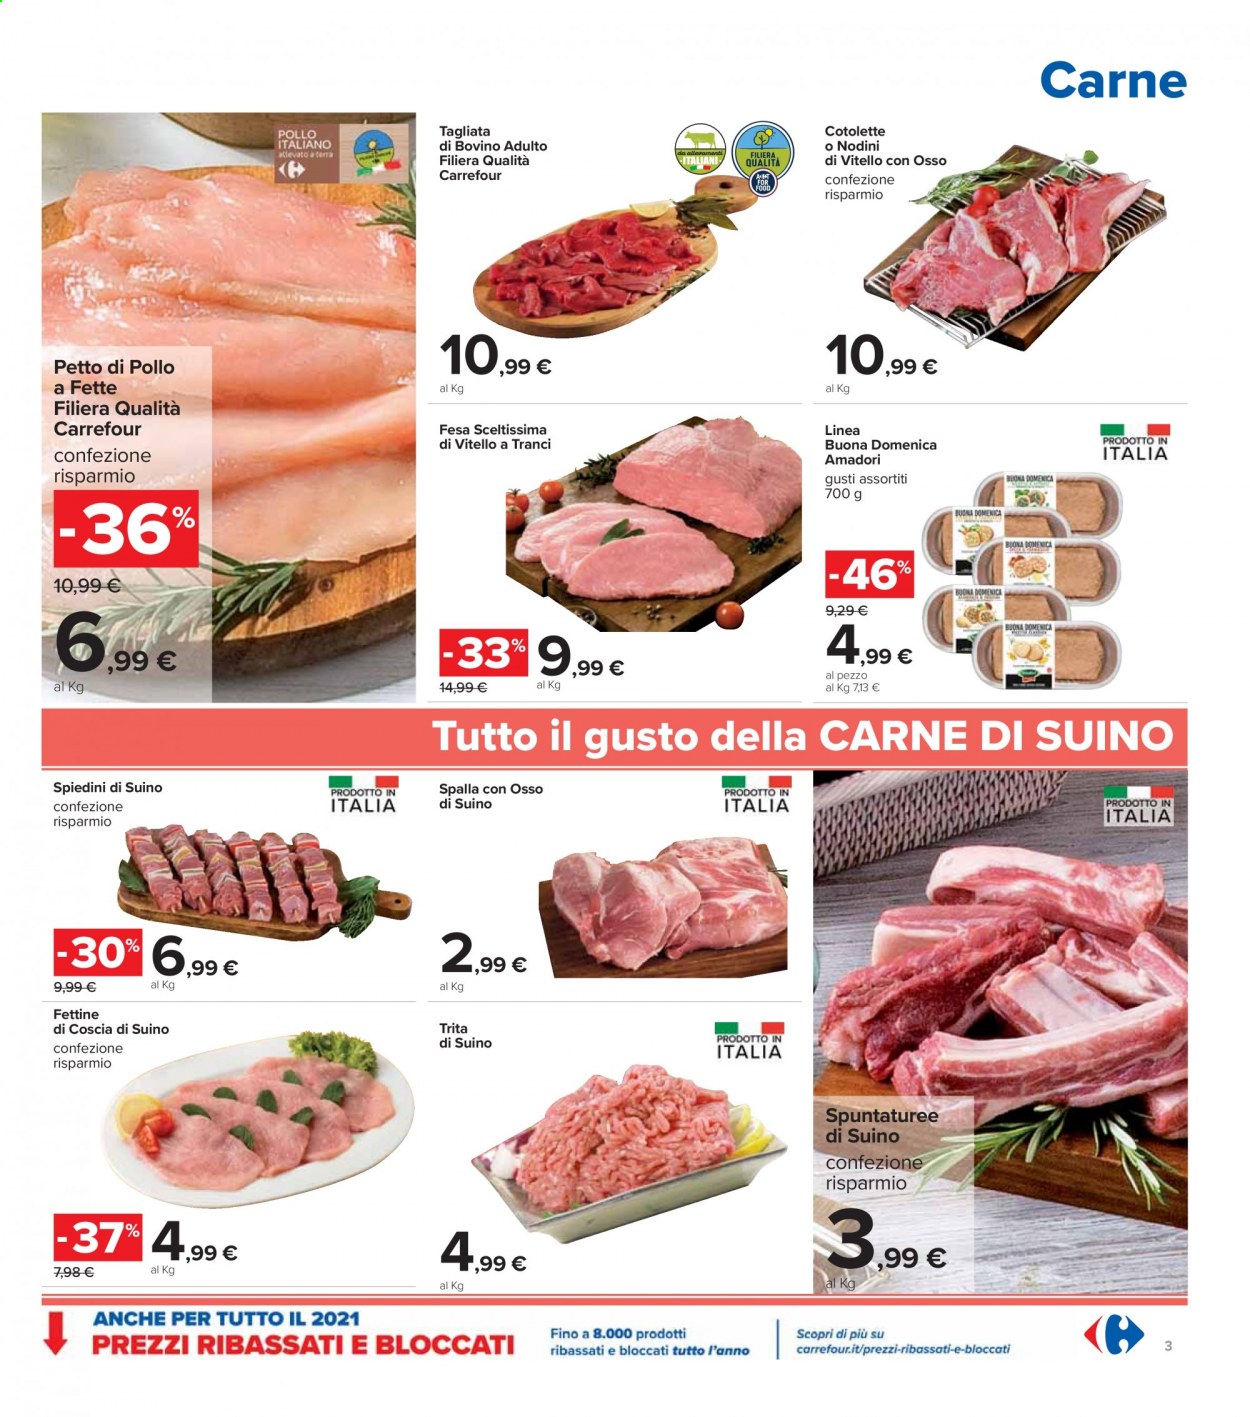 thumbnail - Volantino Carrefour - 11/2/2021 - 25/2/2021 - Prodotti in offerta - cotolette, petto di pollo, Amadori, manzo, tagliata, fesa scelta di vitello, suino, spiedini. Pagina 3.